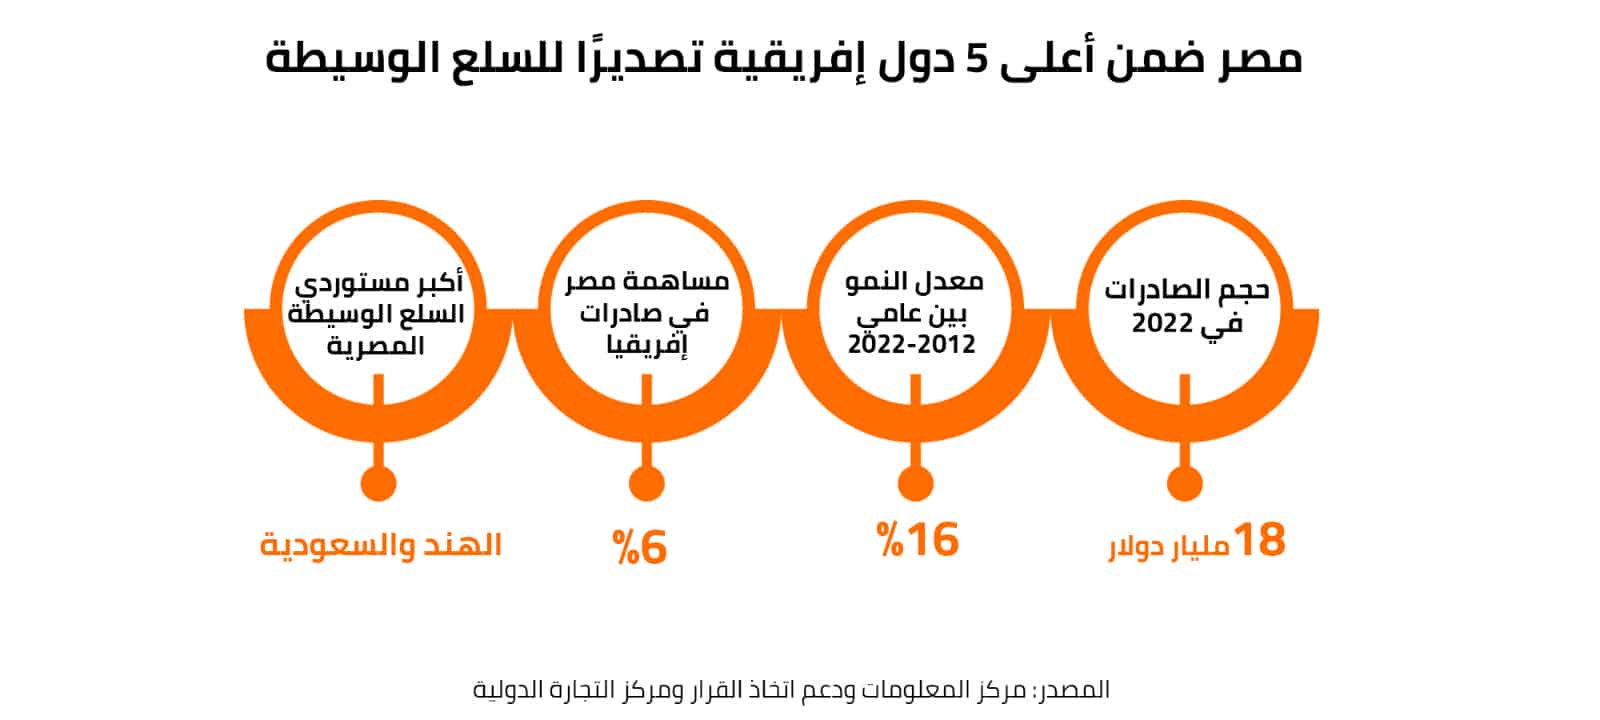 مصر ضمن أعلى 5 دول إفريقية تصديرًا للسلع الوسيطة  